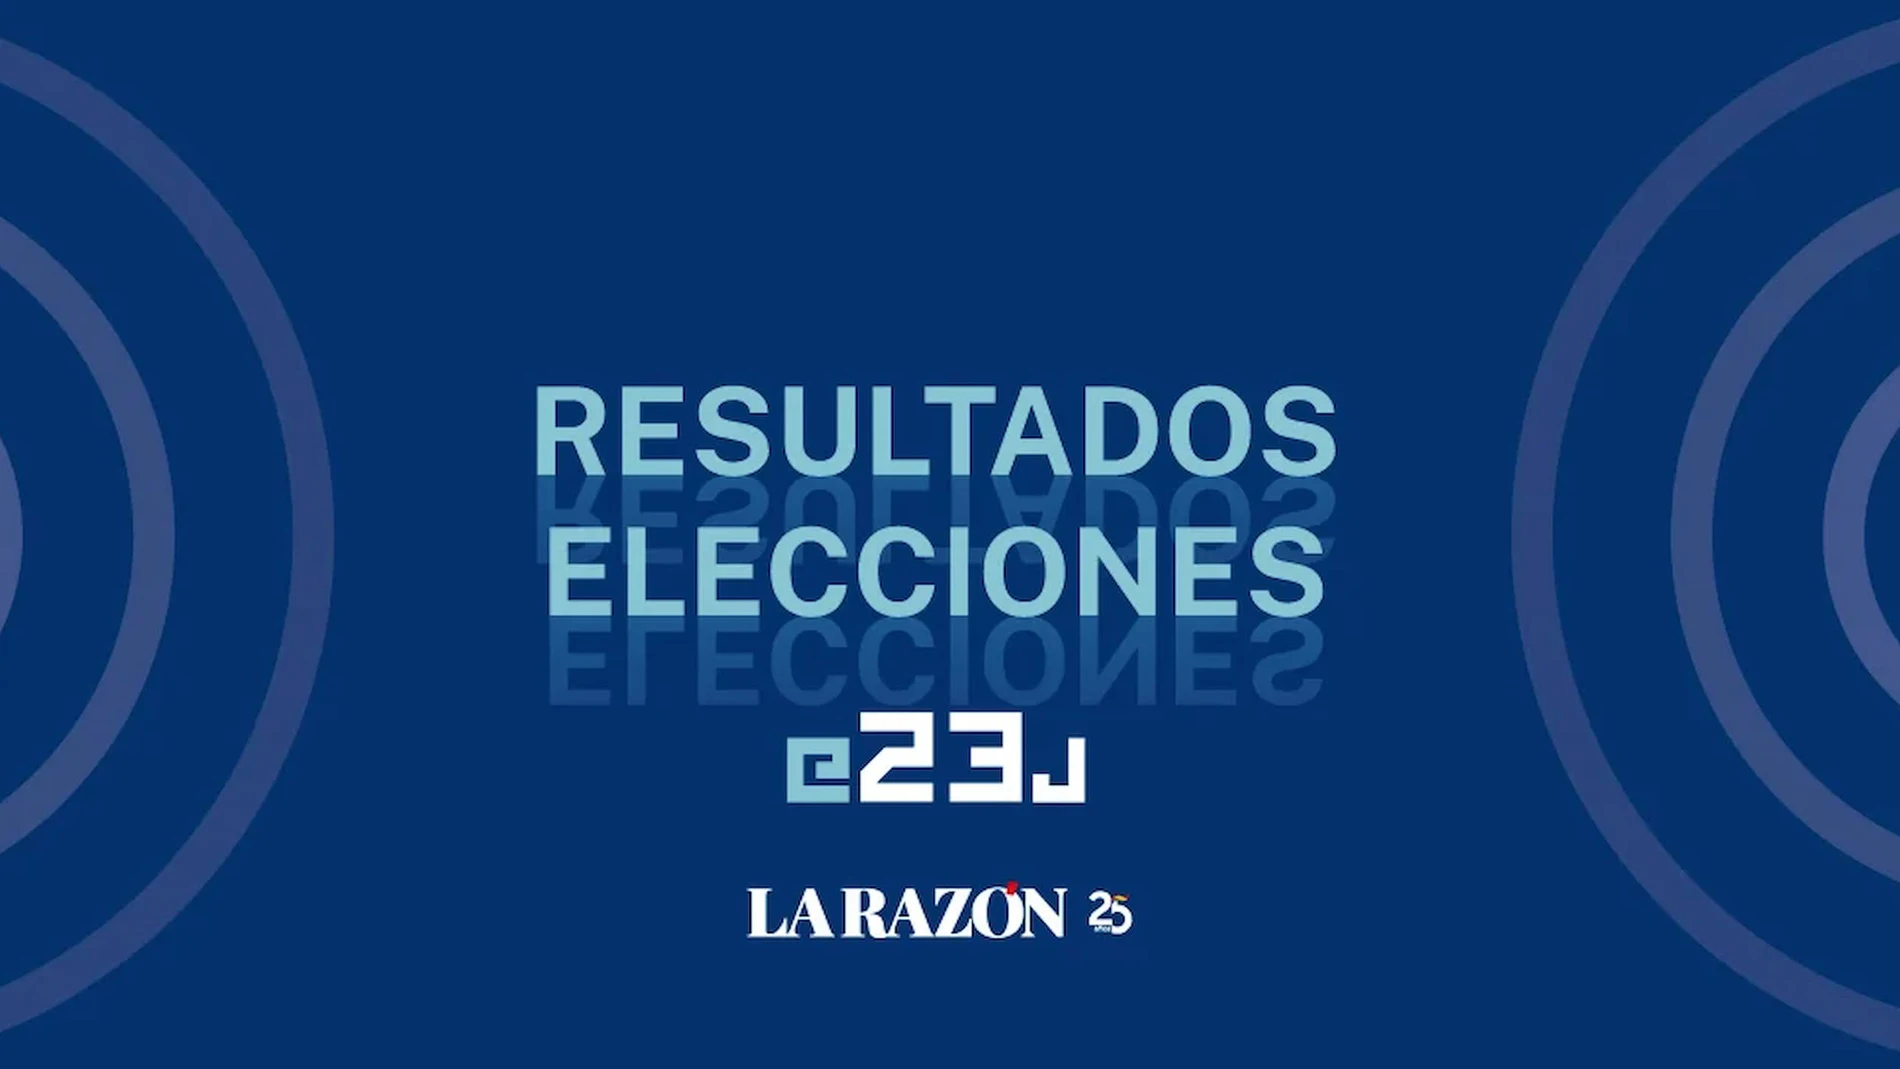 Resultados elecciones 23J